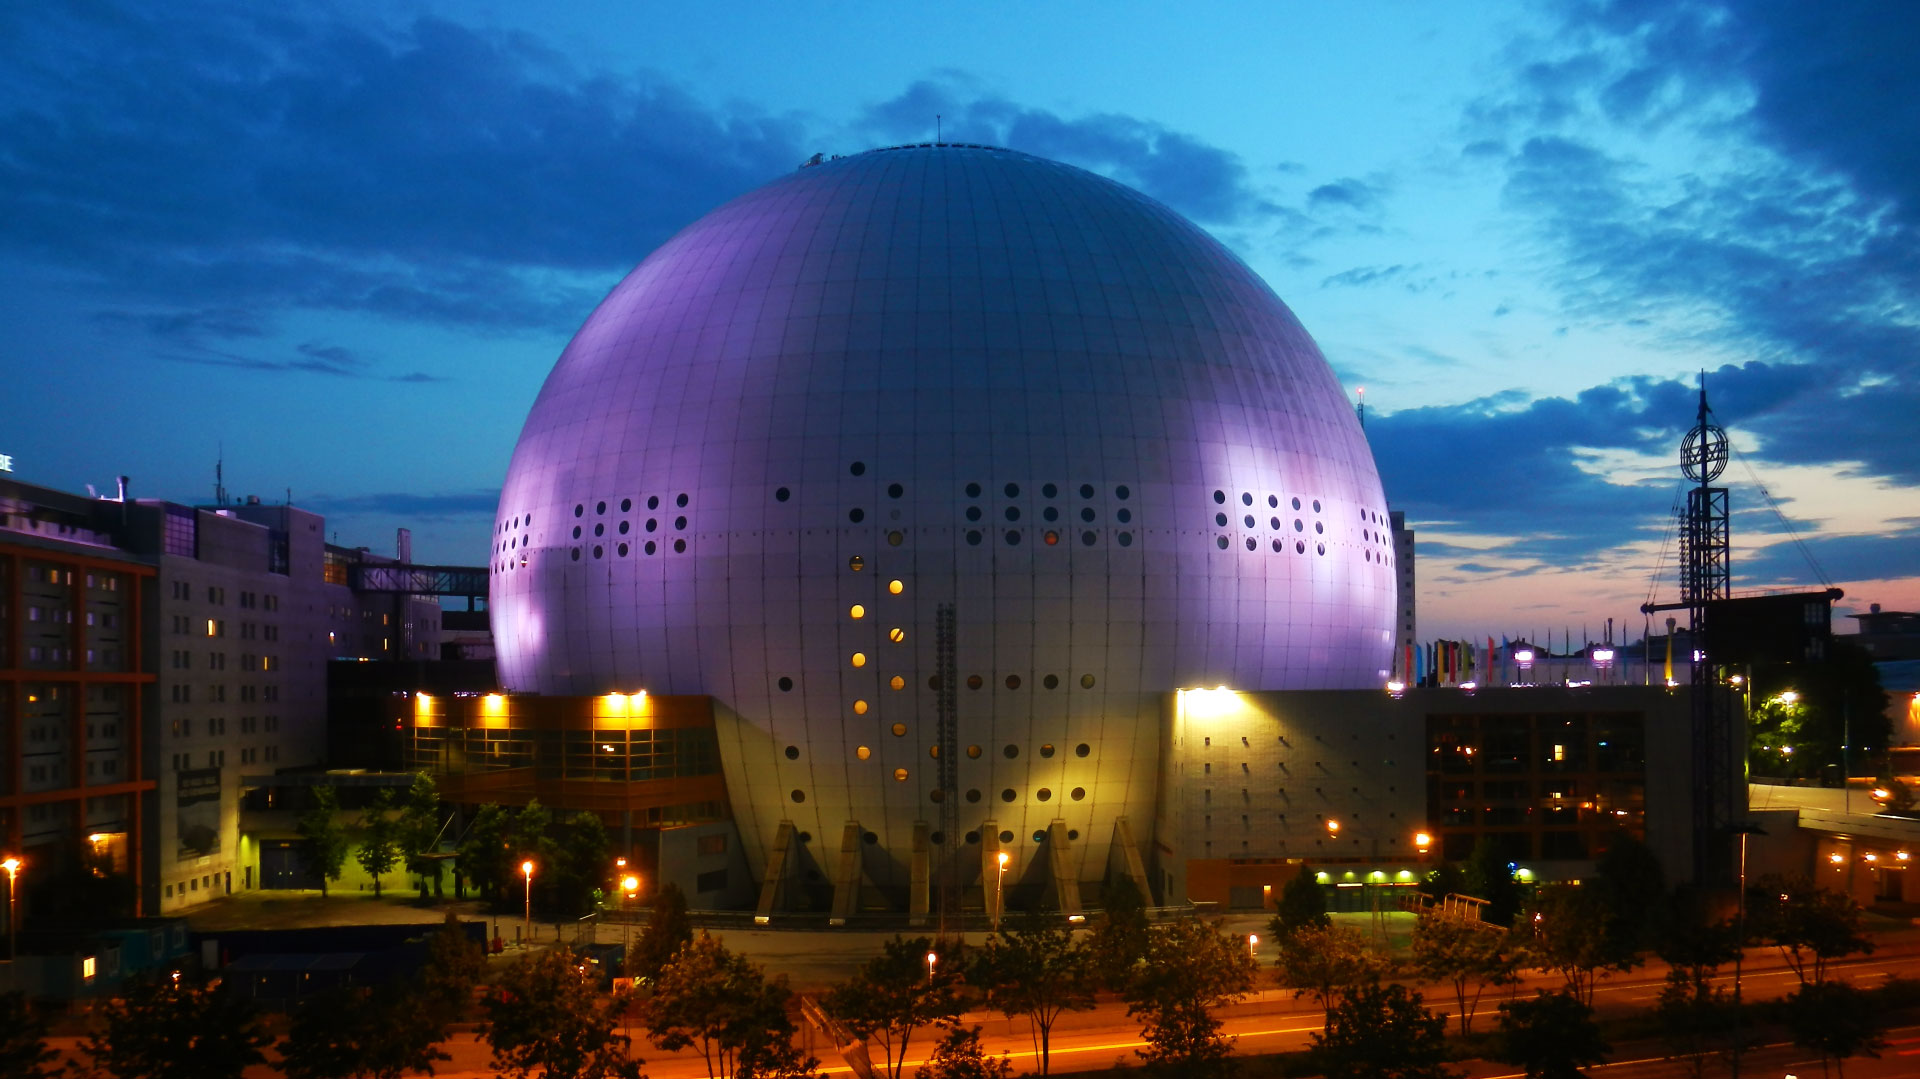 عکس ساختمان گنبدی استادیوم اریکسون در شهر استکهلم در شب با نورپردازی بنفش